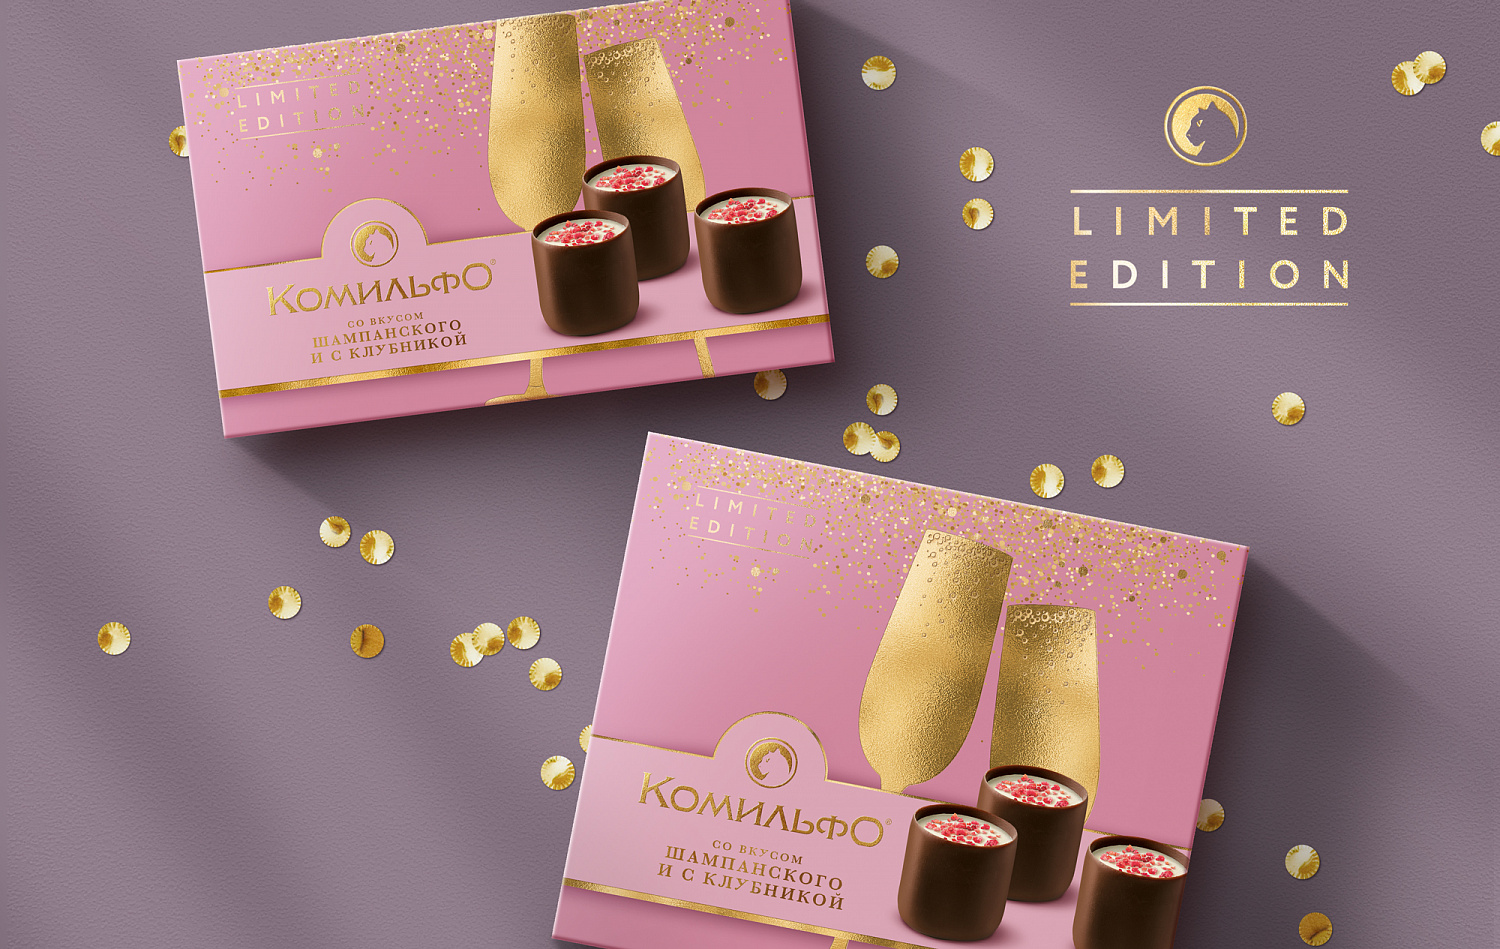 Комильфо® со вкусом шампанского и с клубникой: дизайн упаковки шоколадных конфет - Портфолио Depot